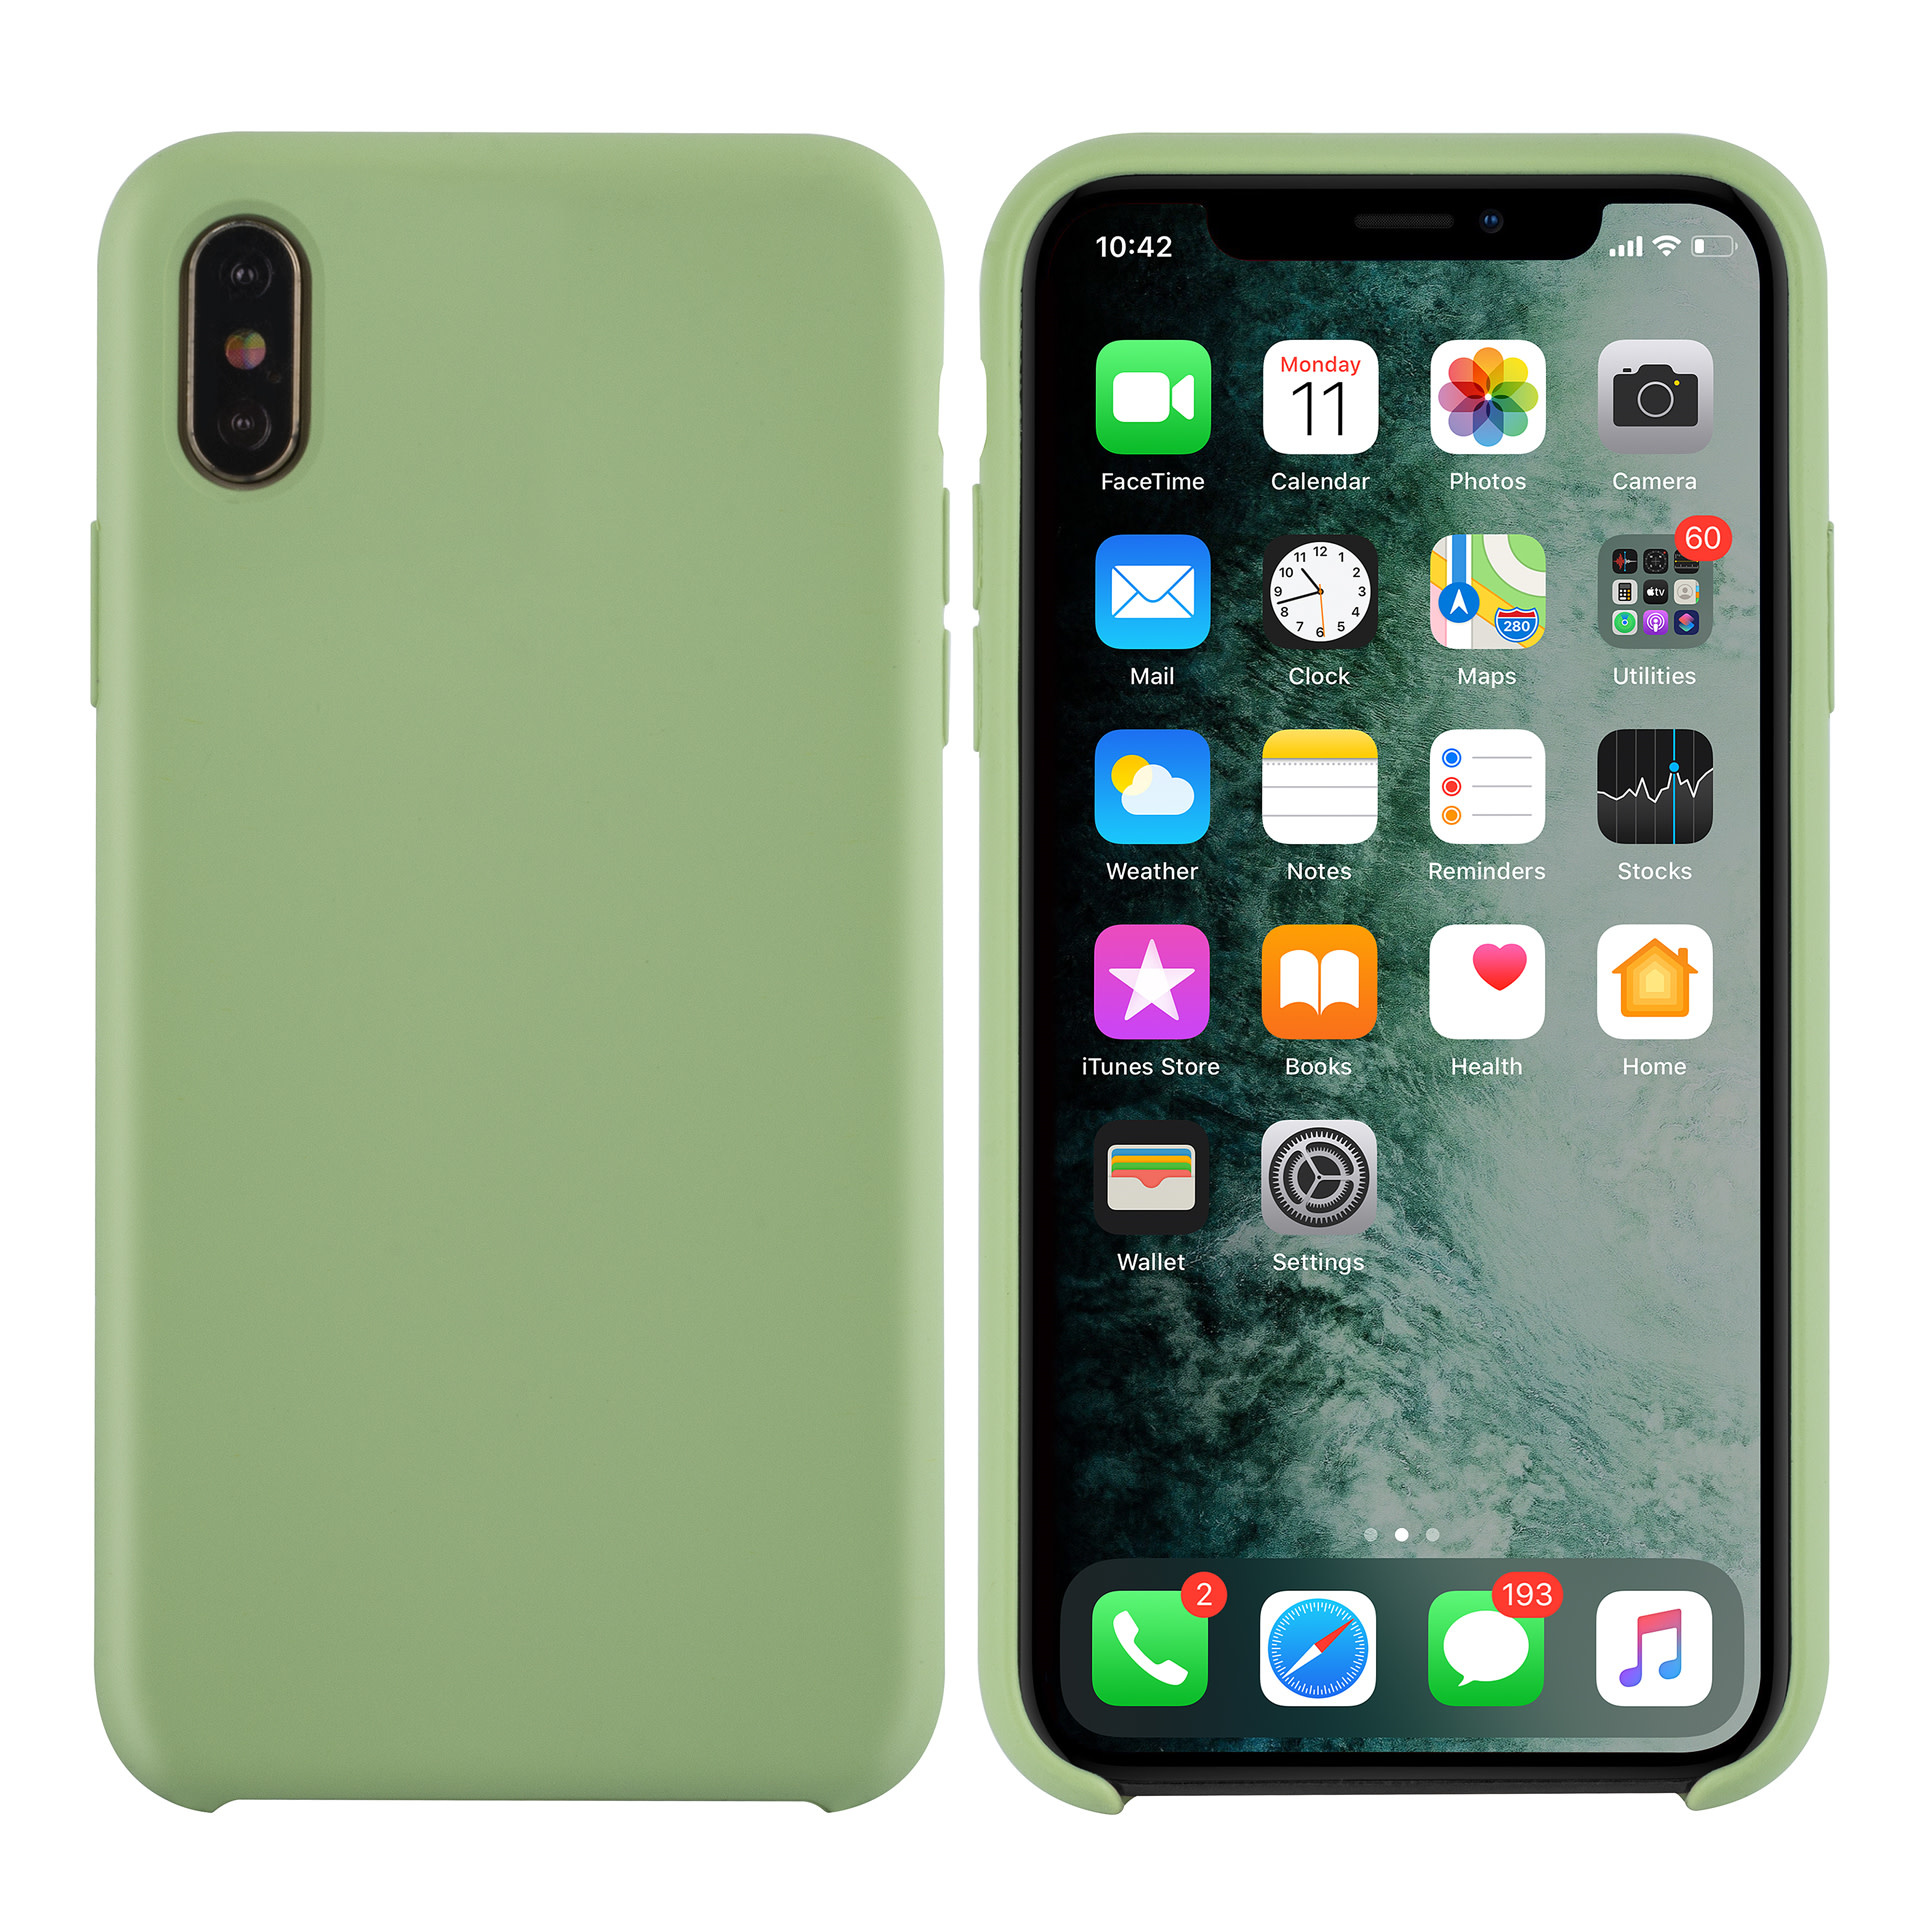 geweld Editie Proberen Apple iPhone Xs Max Licht groen Backcover hoesje - silicone - NT Mobiel  Accessoires - Nederland